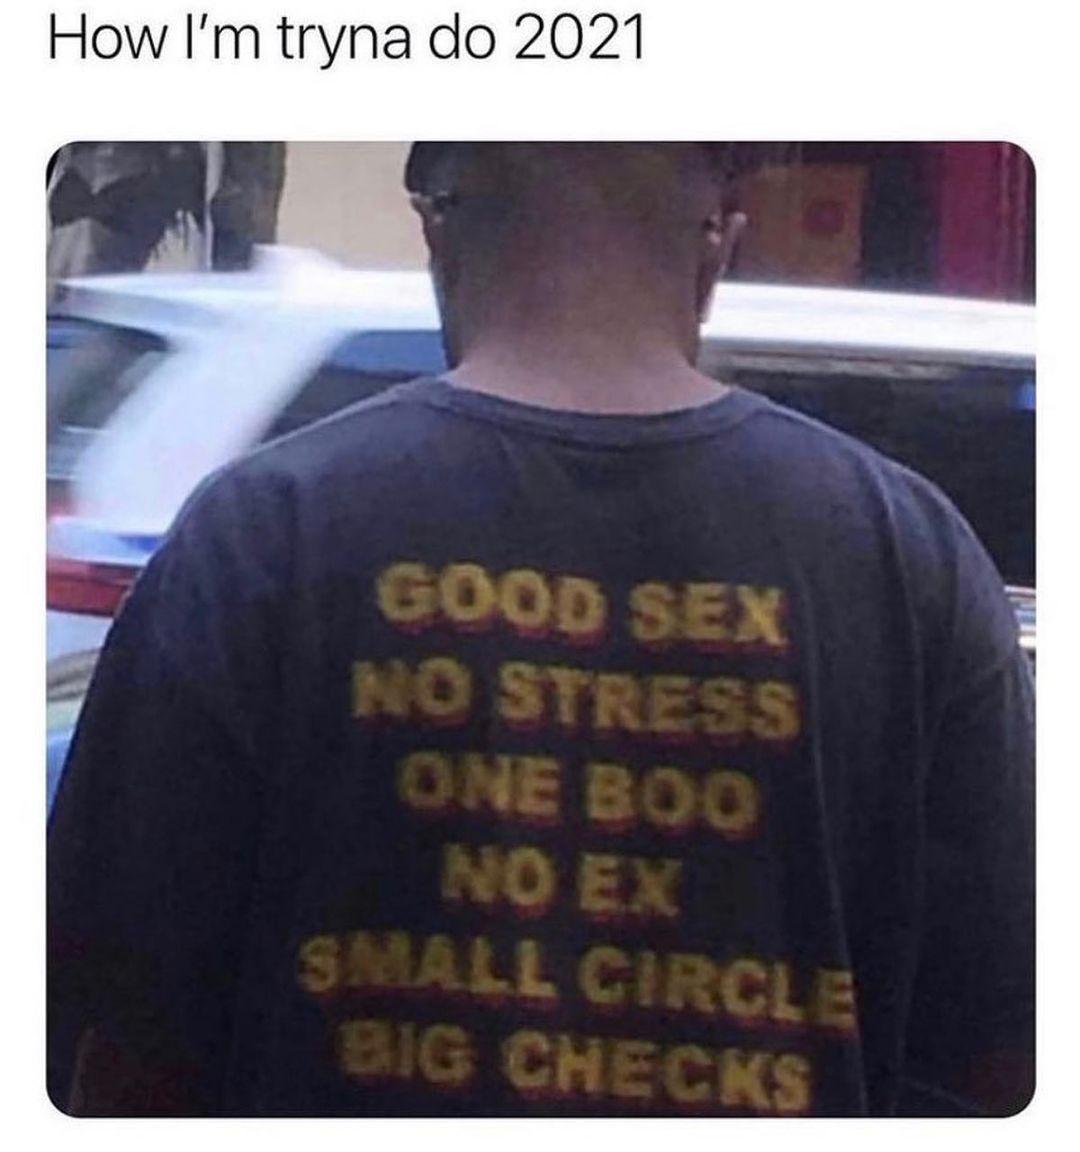 t shirt - How I'm tryna do 2021 Good Sex No Stress One Boo No Ex Small Circle Big Checks